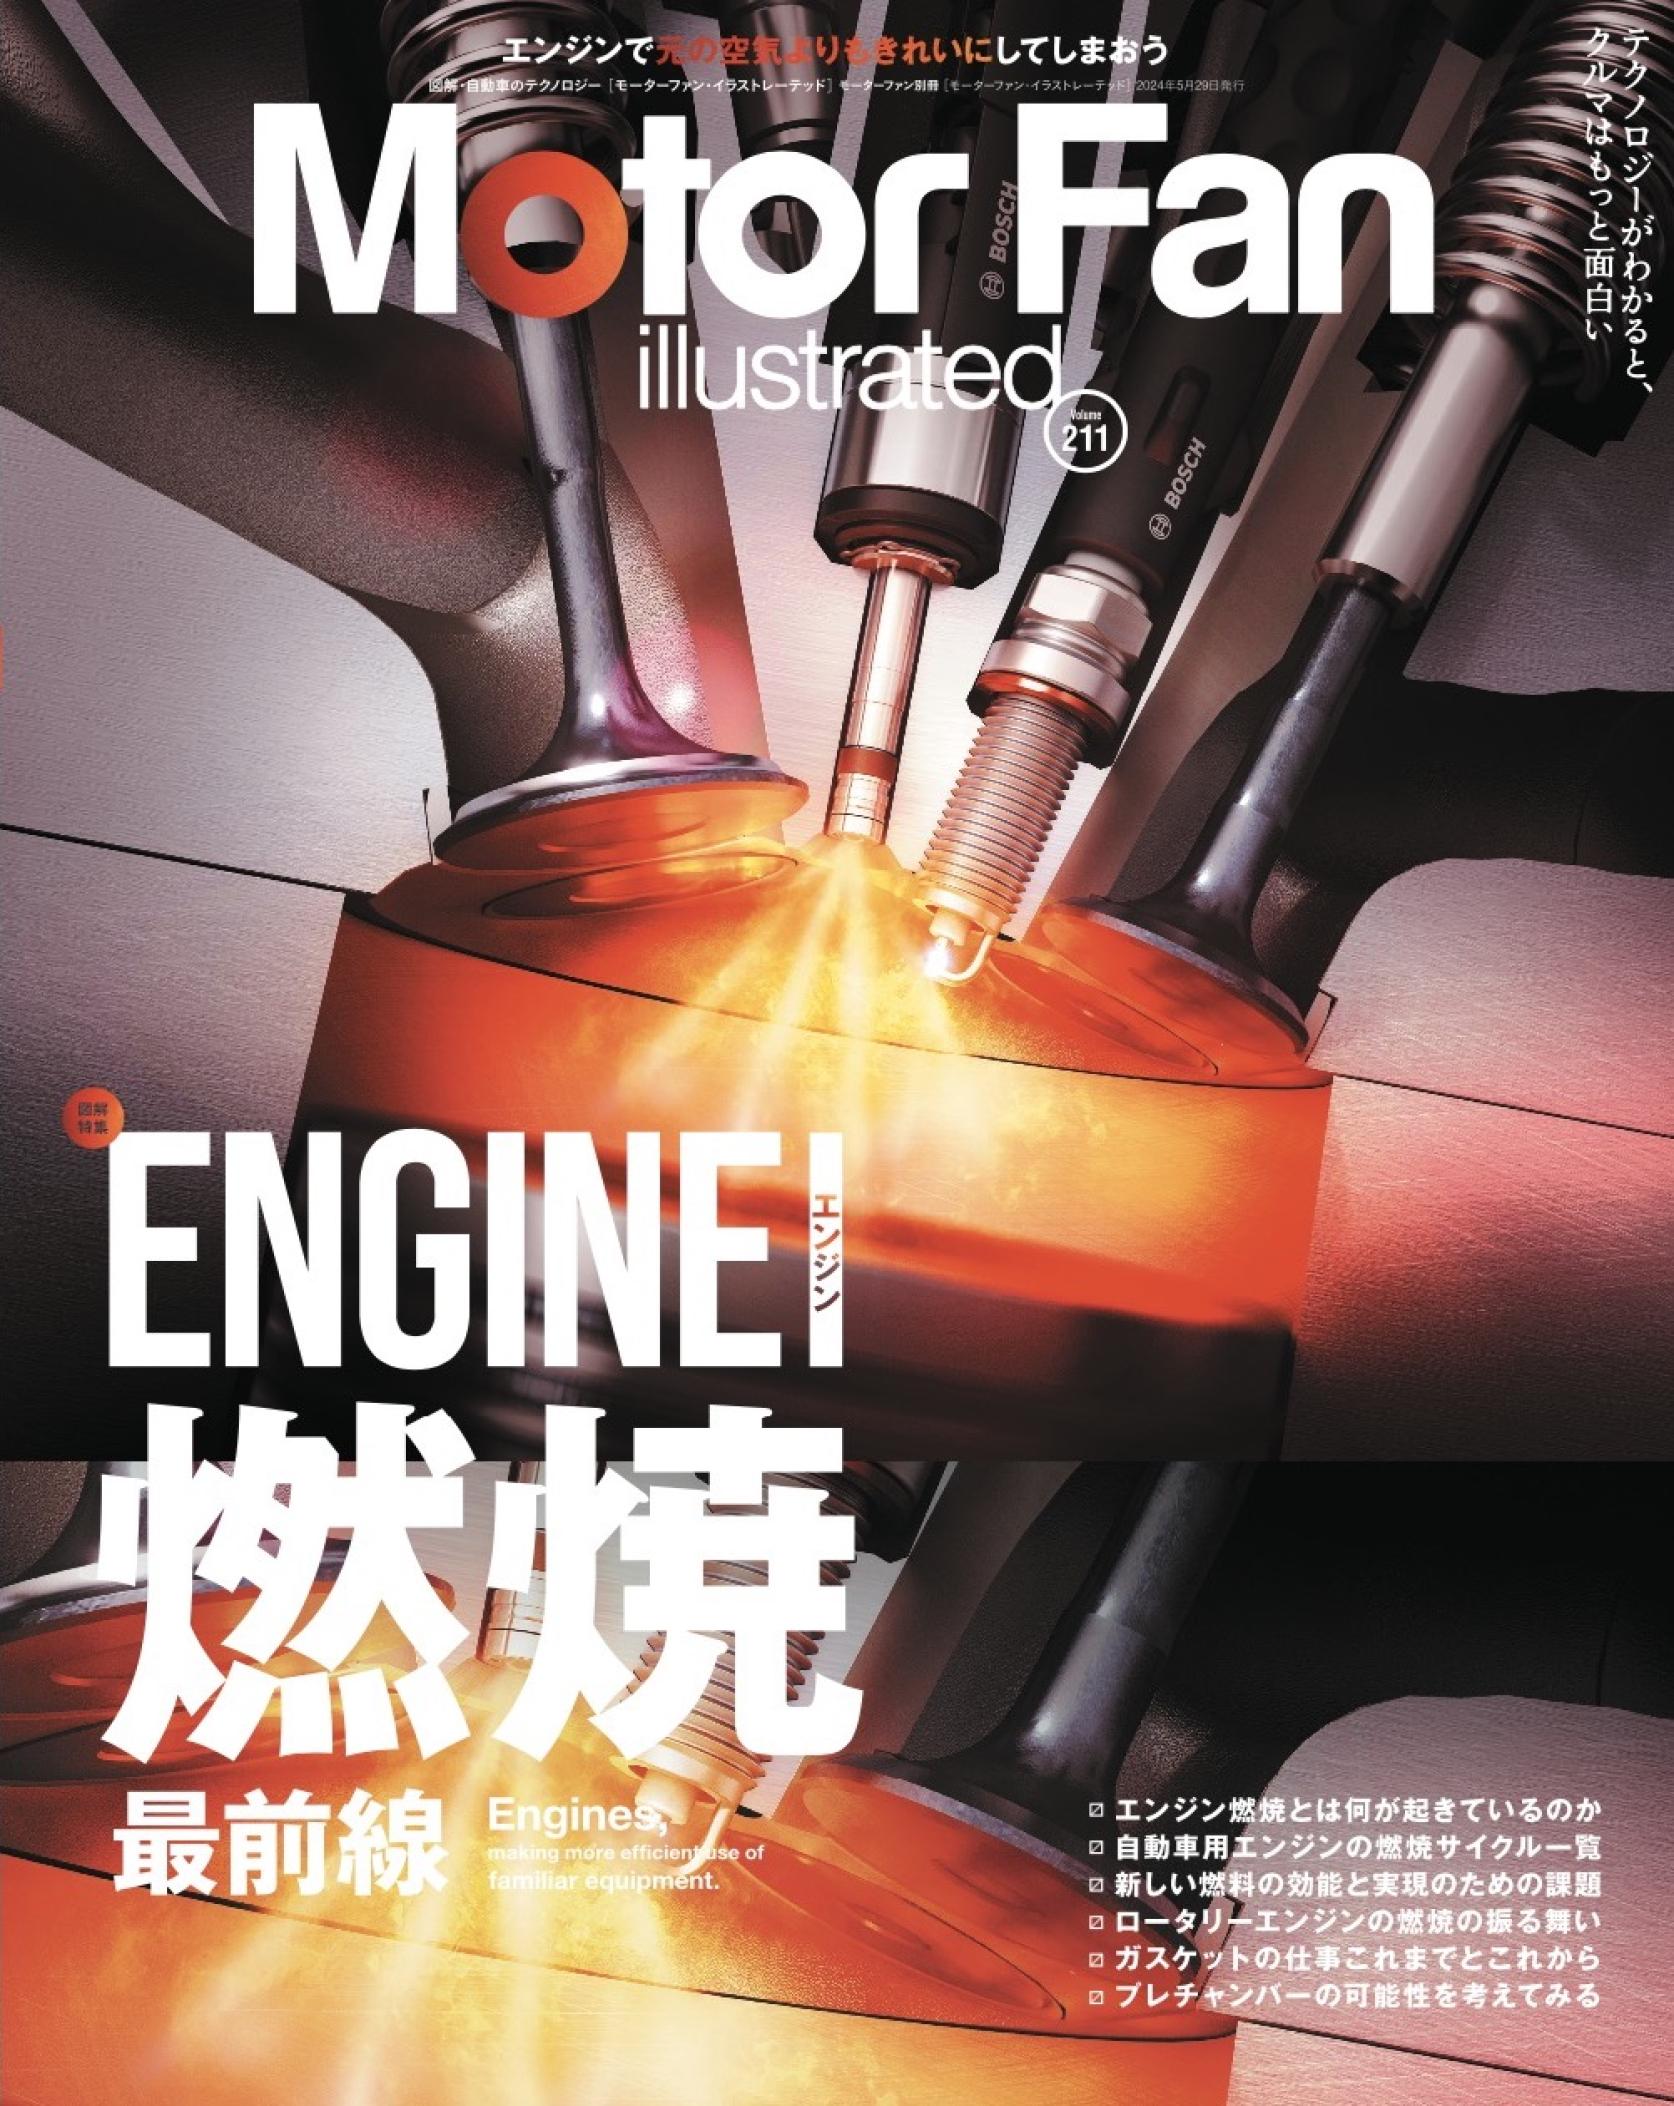 機械工学科 飯島研究室での次世代エンジンの研究がMotor Fan illustrated Vol. 211号に掲載されました。